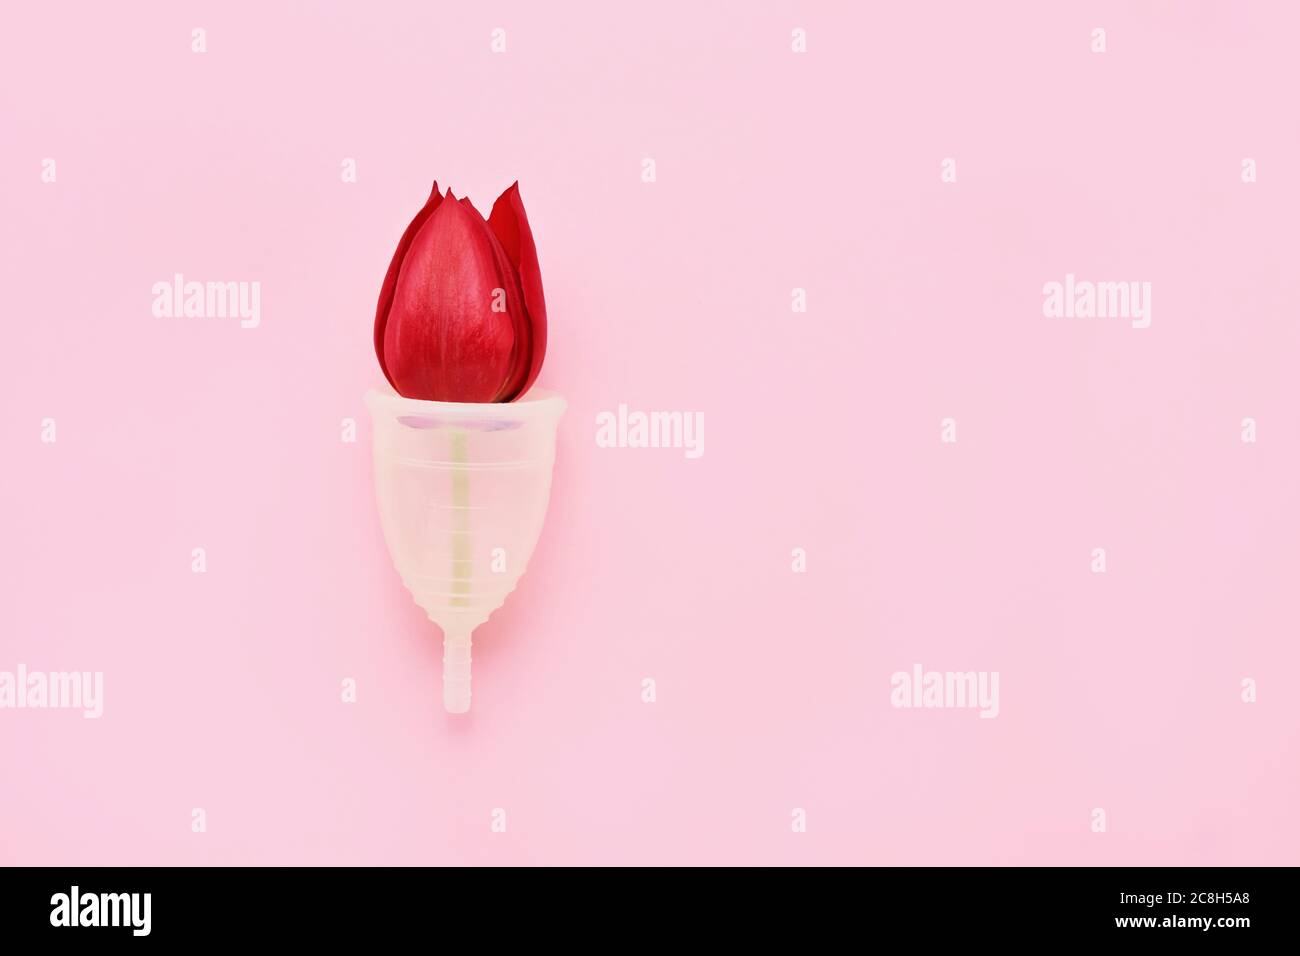 Wiederverwendbarer Menstruationstasse mit roter Tulpe innen auf rosa Hintergrund. Alternative weibliche Hygiene-Produkt während der Periode. Frauengesundheitskonzept. Keine Wa Stockfoto